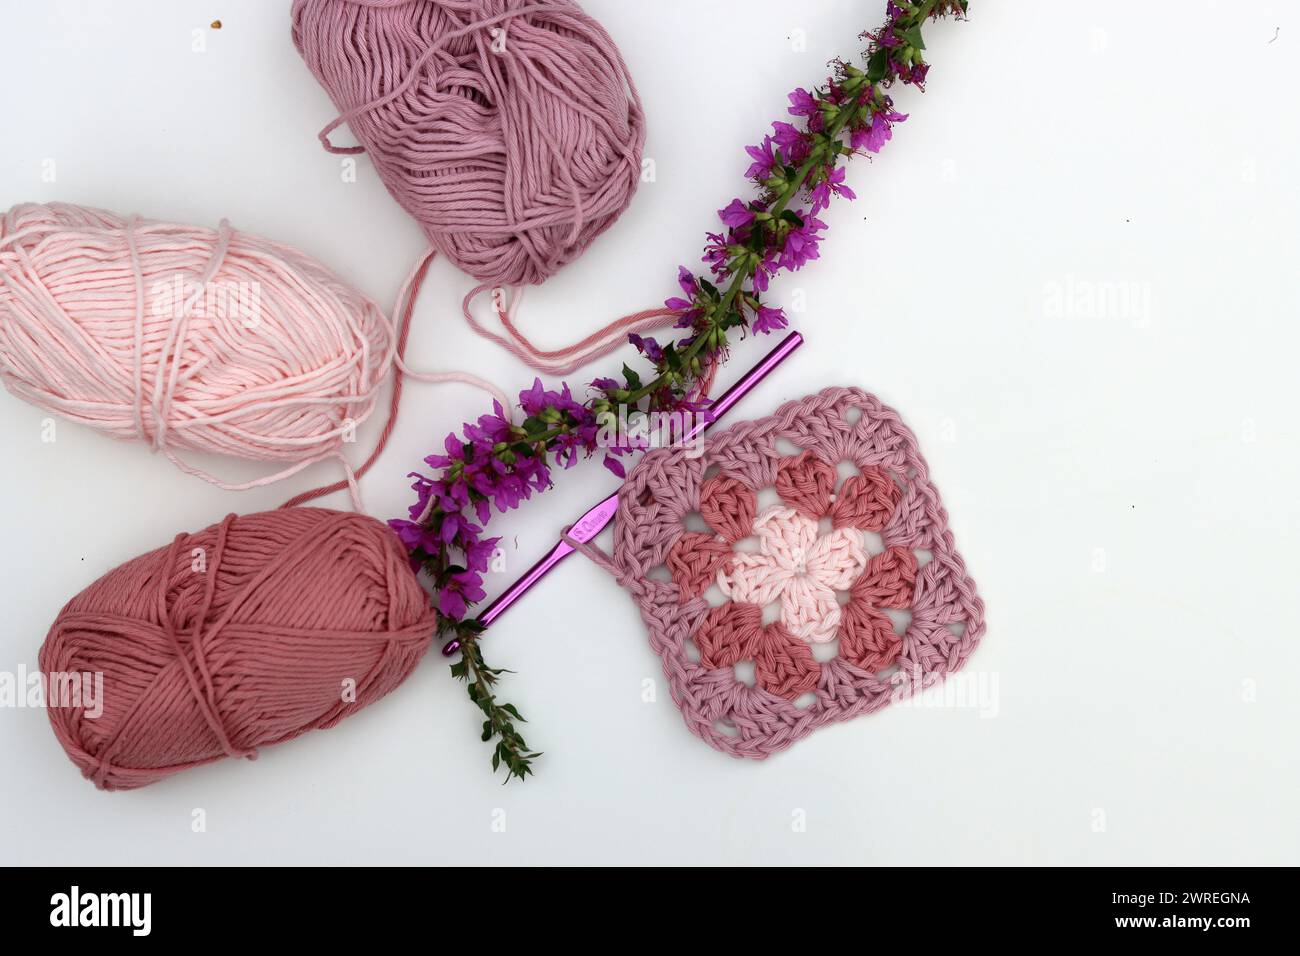 Carré Granny crocheté rose, boules de fil de coton doux de différentes nuances de couleur rose. Fond blanc avec espace de copie. Concept de crochet de ressort. Banque D'Images